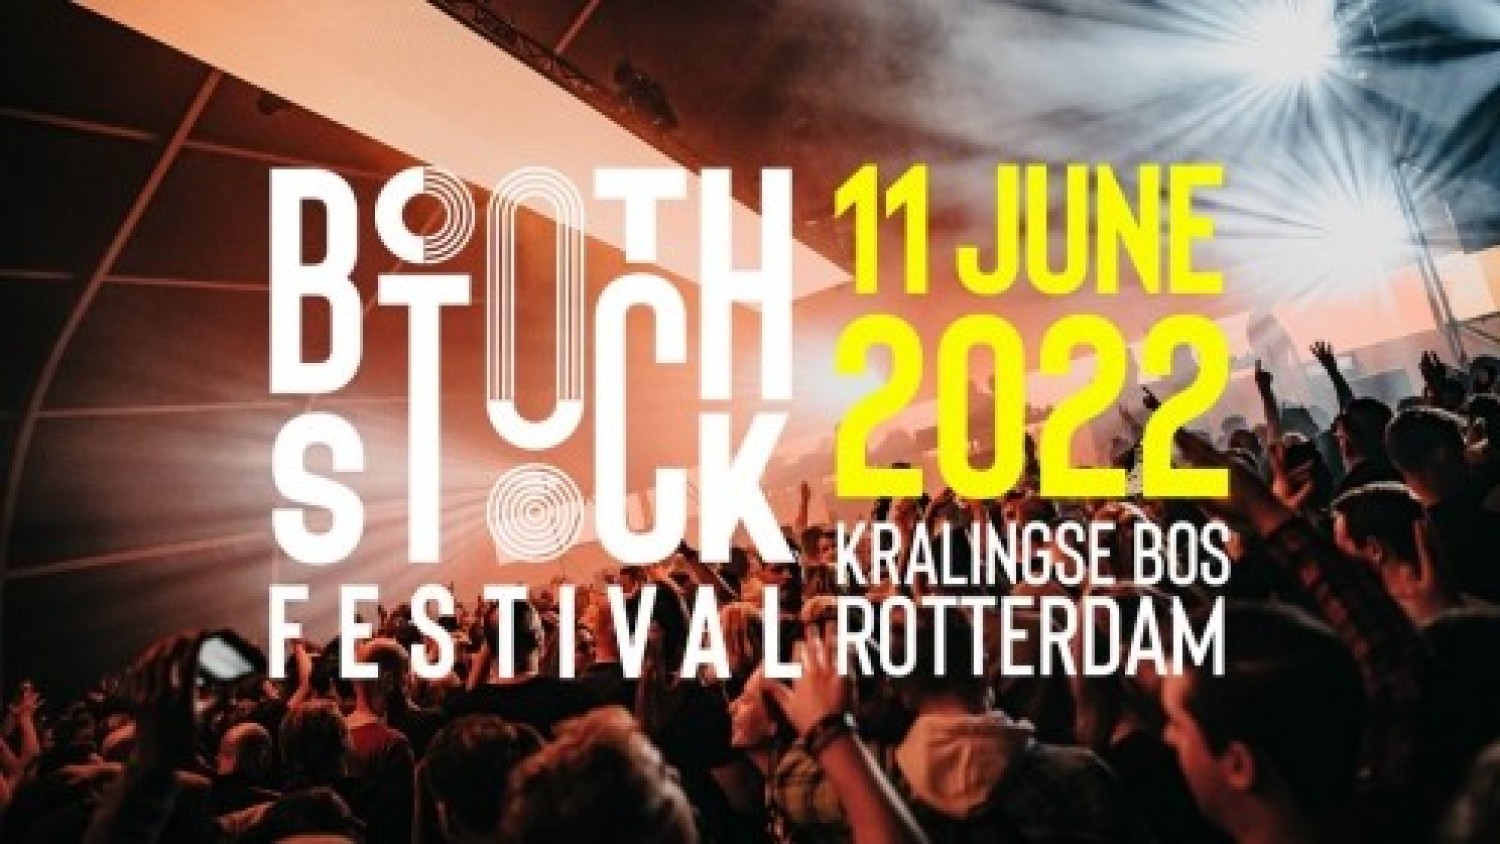 Boothstock festival 2022